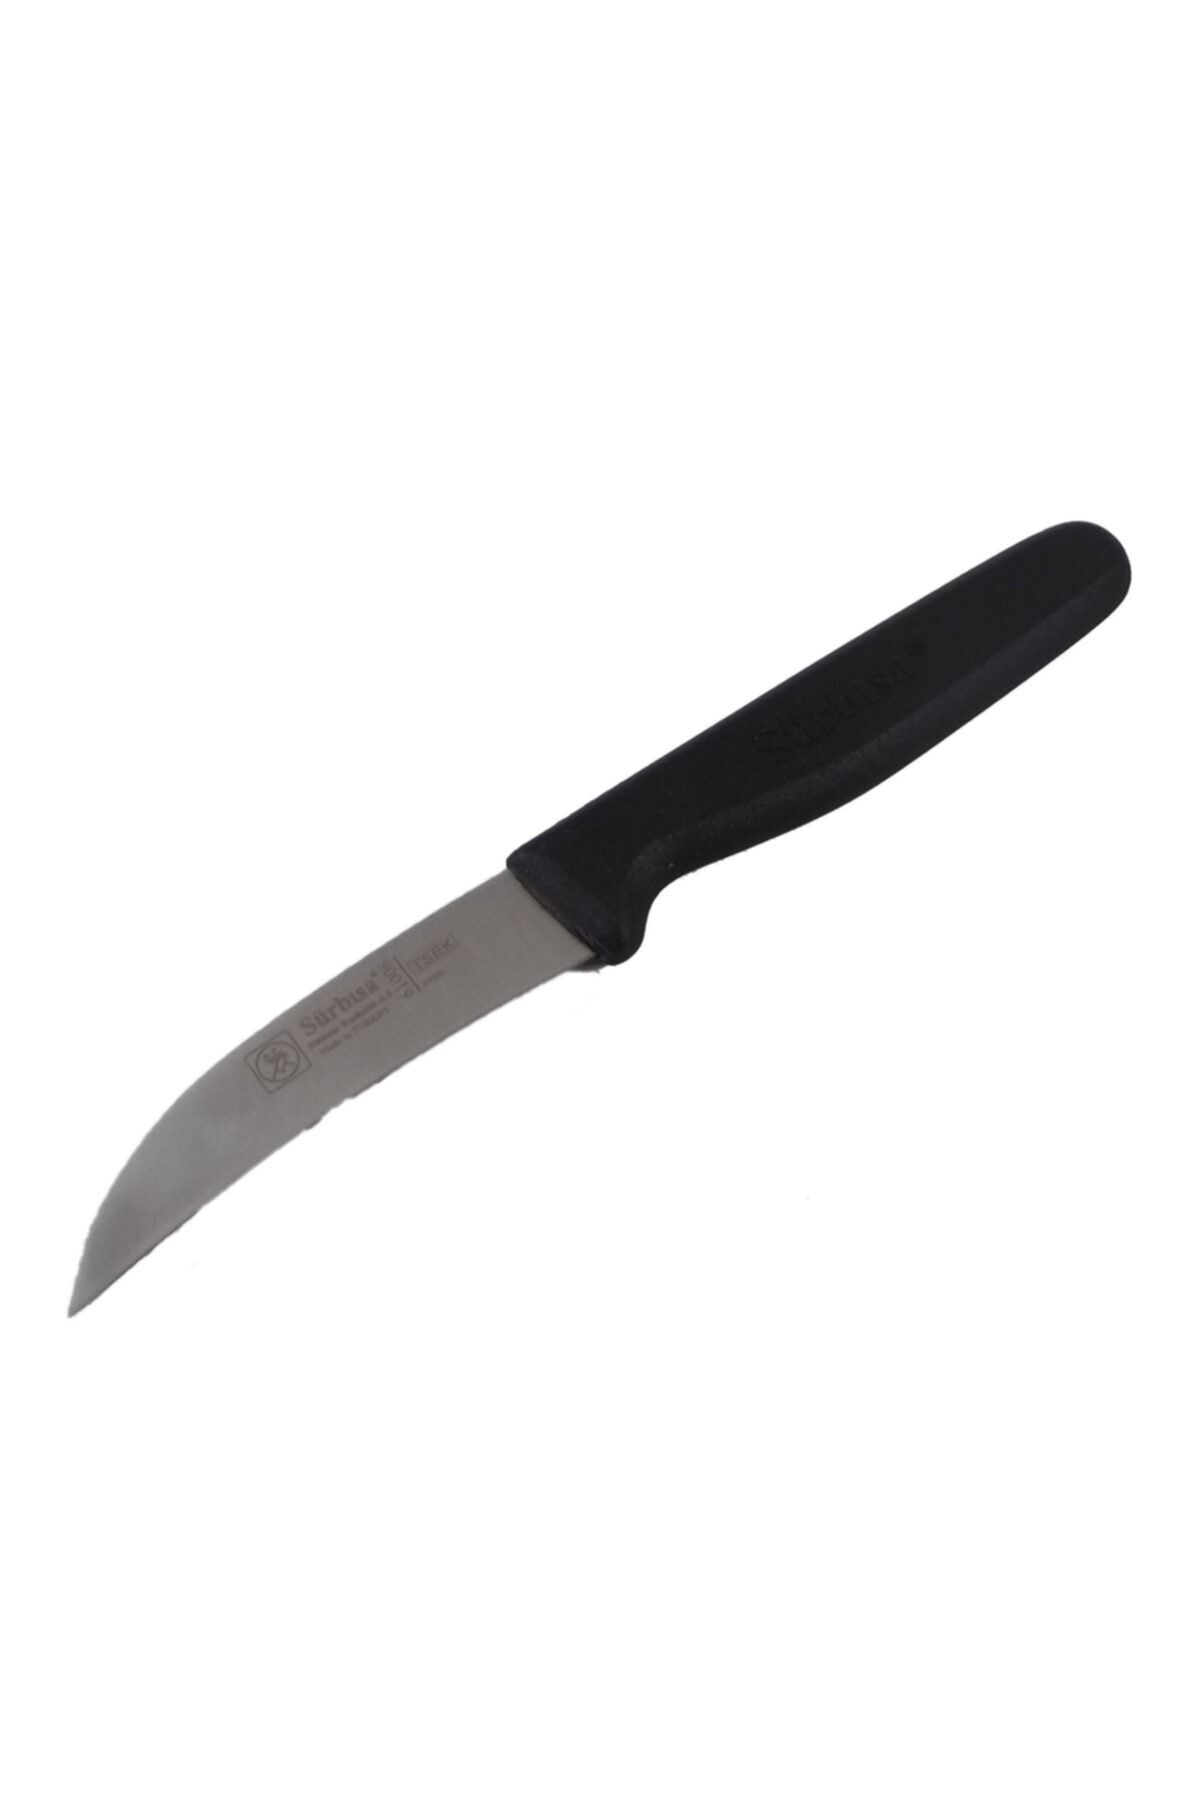 Sürbisa Sürmene Bıçağı 61006 Dekor Bıçağı / En 1.8 Cm Boy 8.0 Cm Kalınlık 1.8 Mm